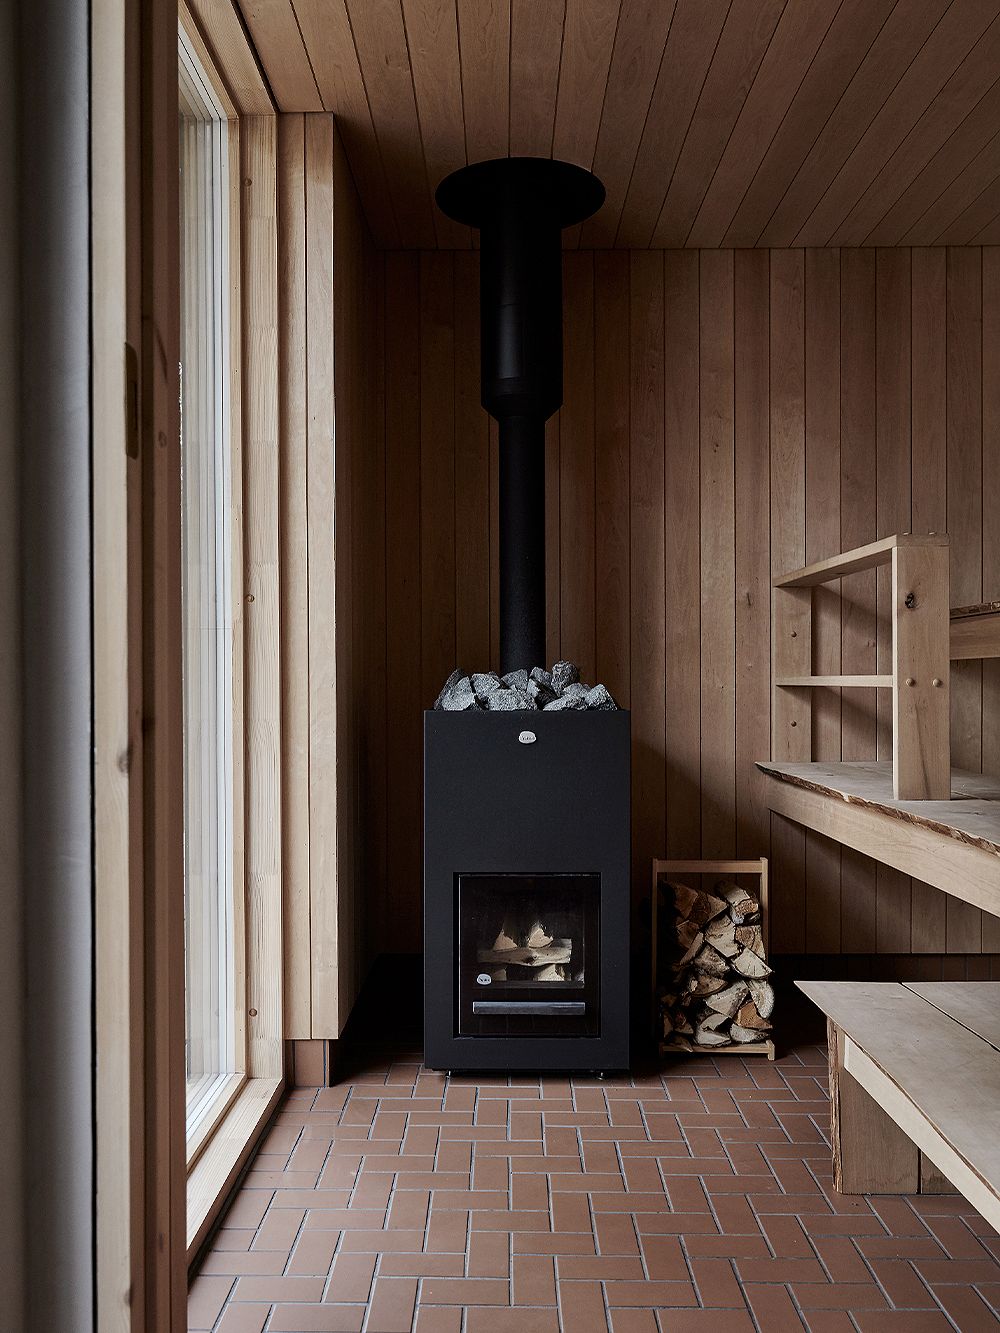 A modern Finnish sauna